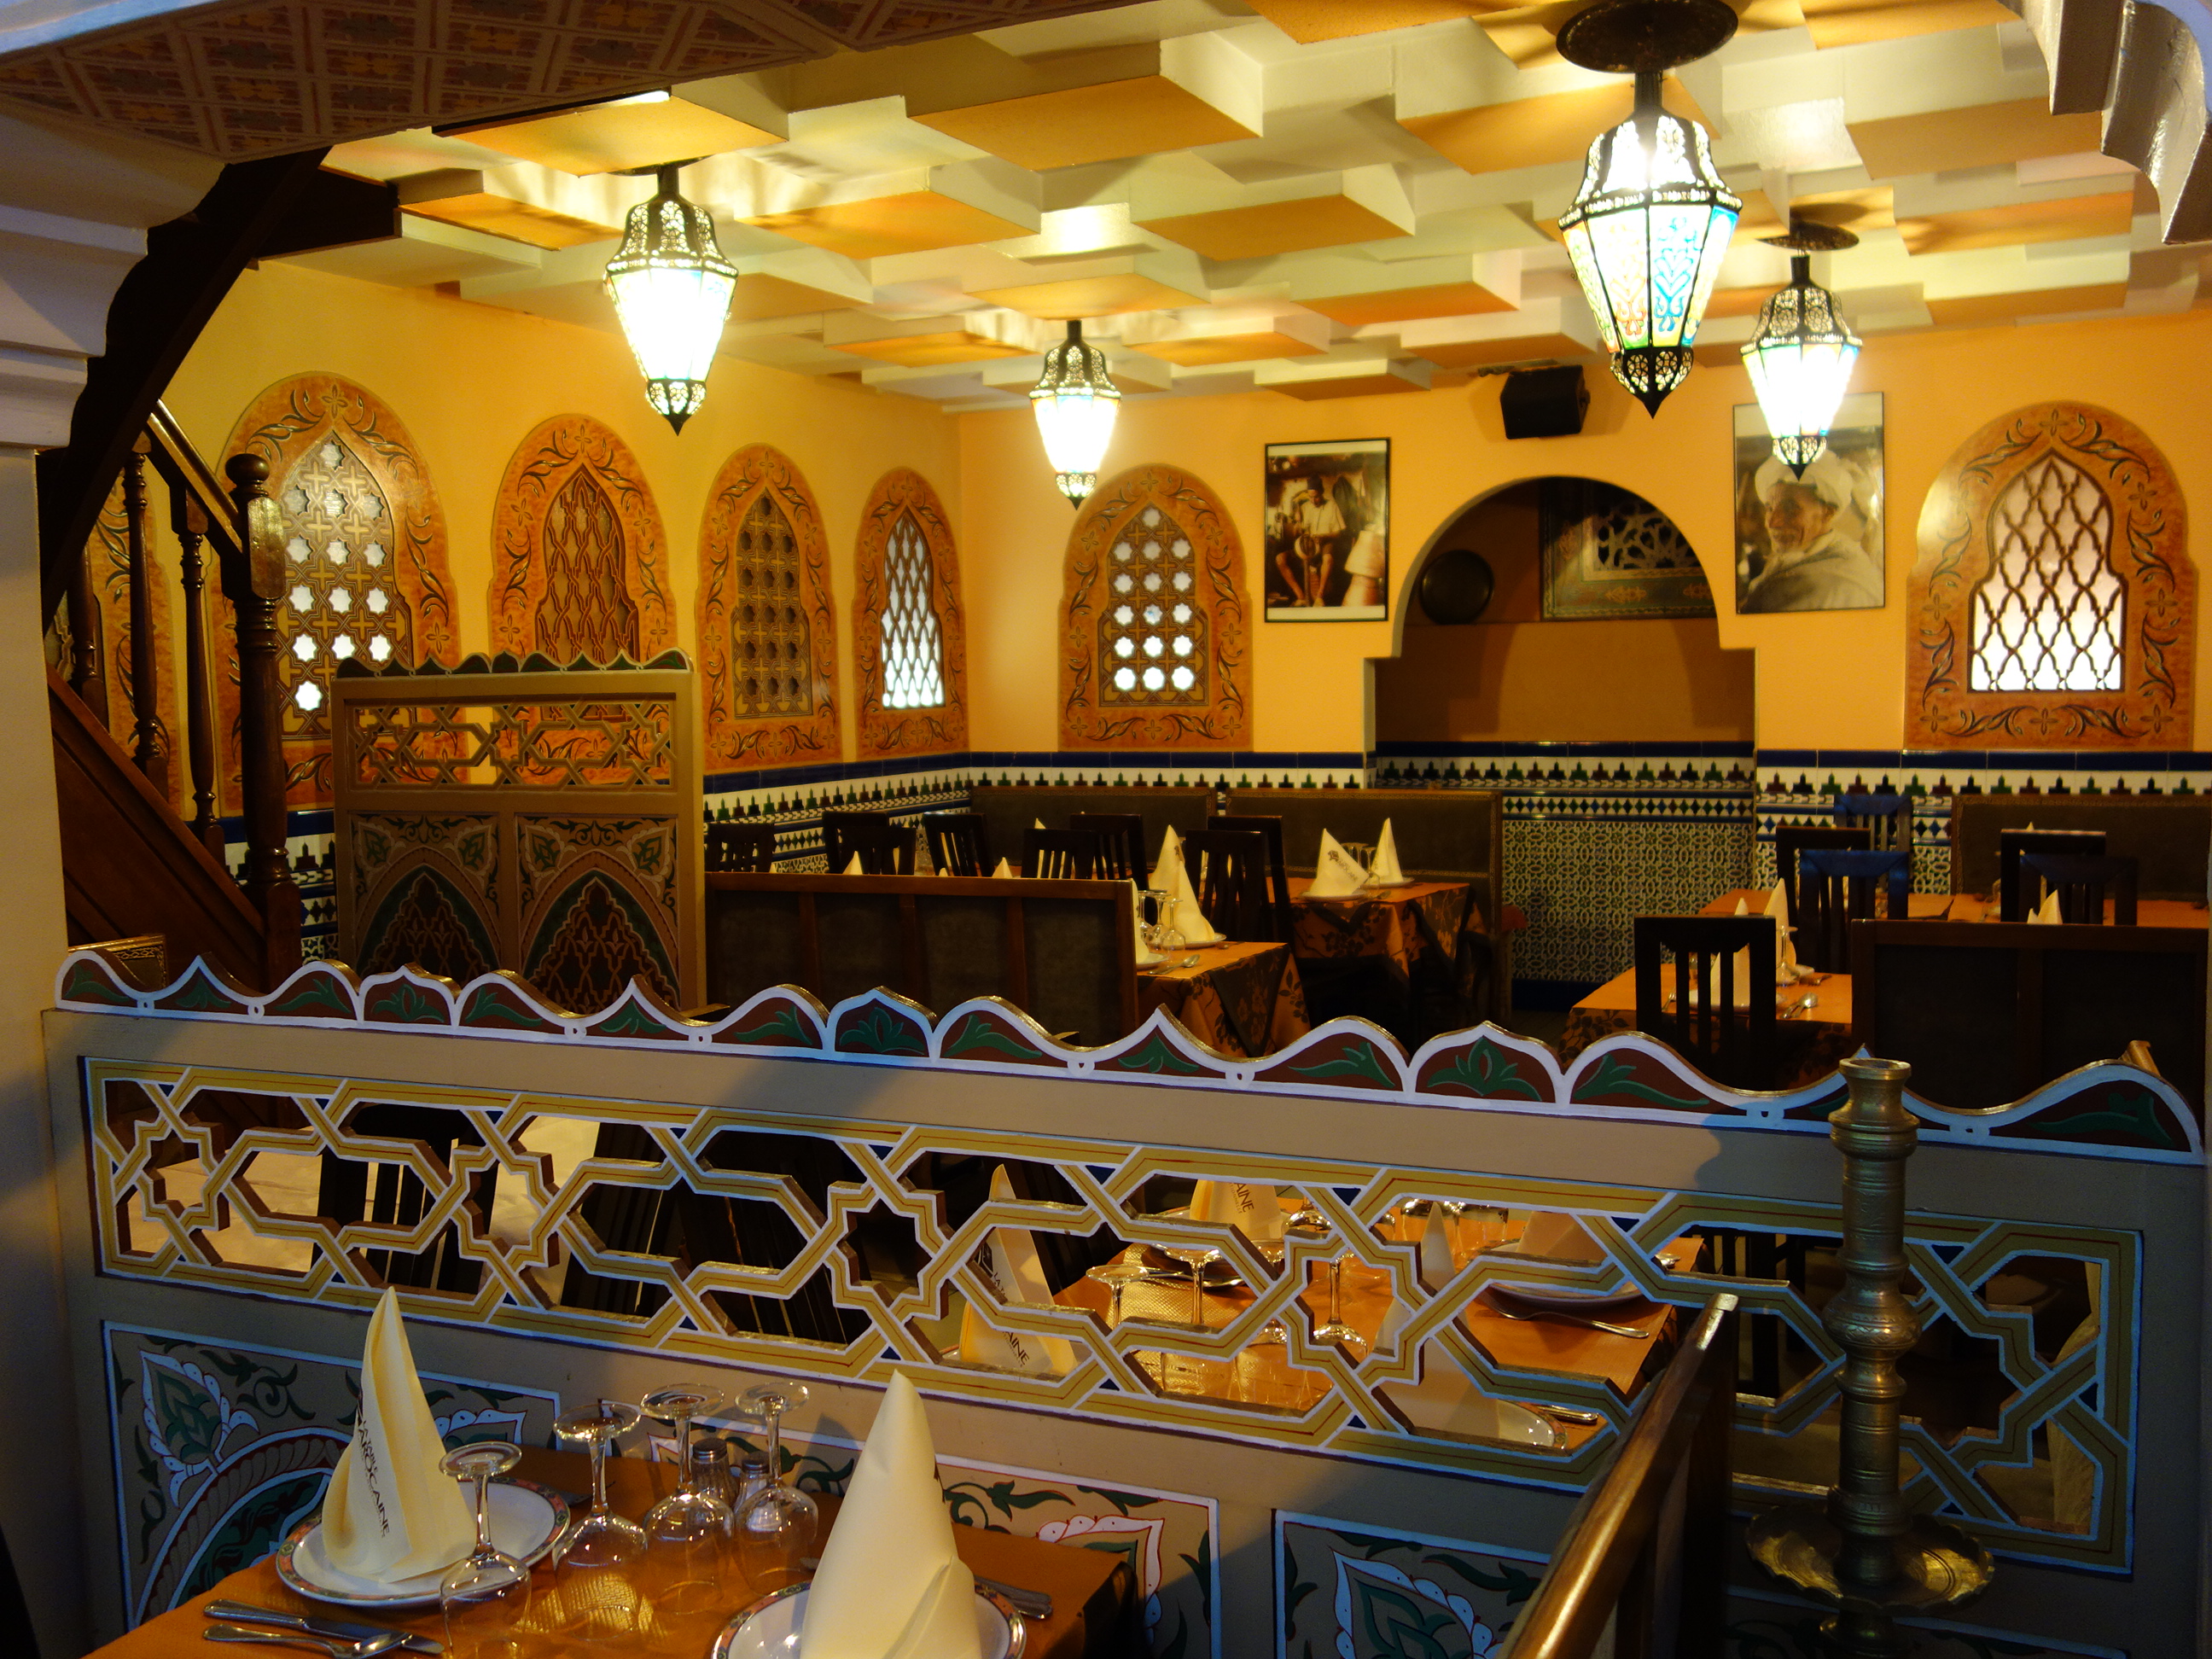 photo-restaurant-table-marocaine